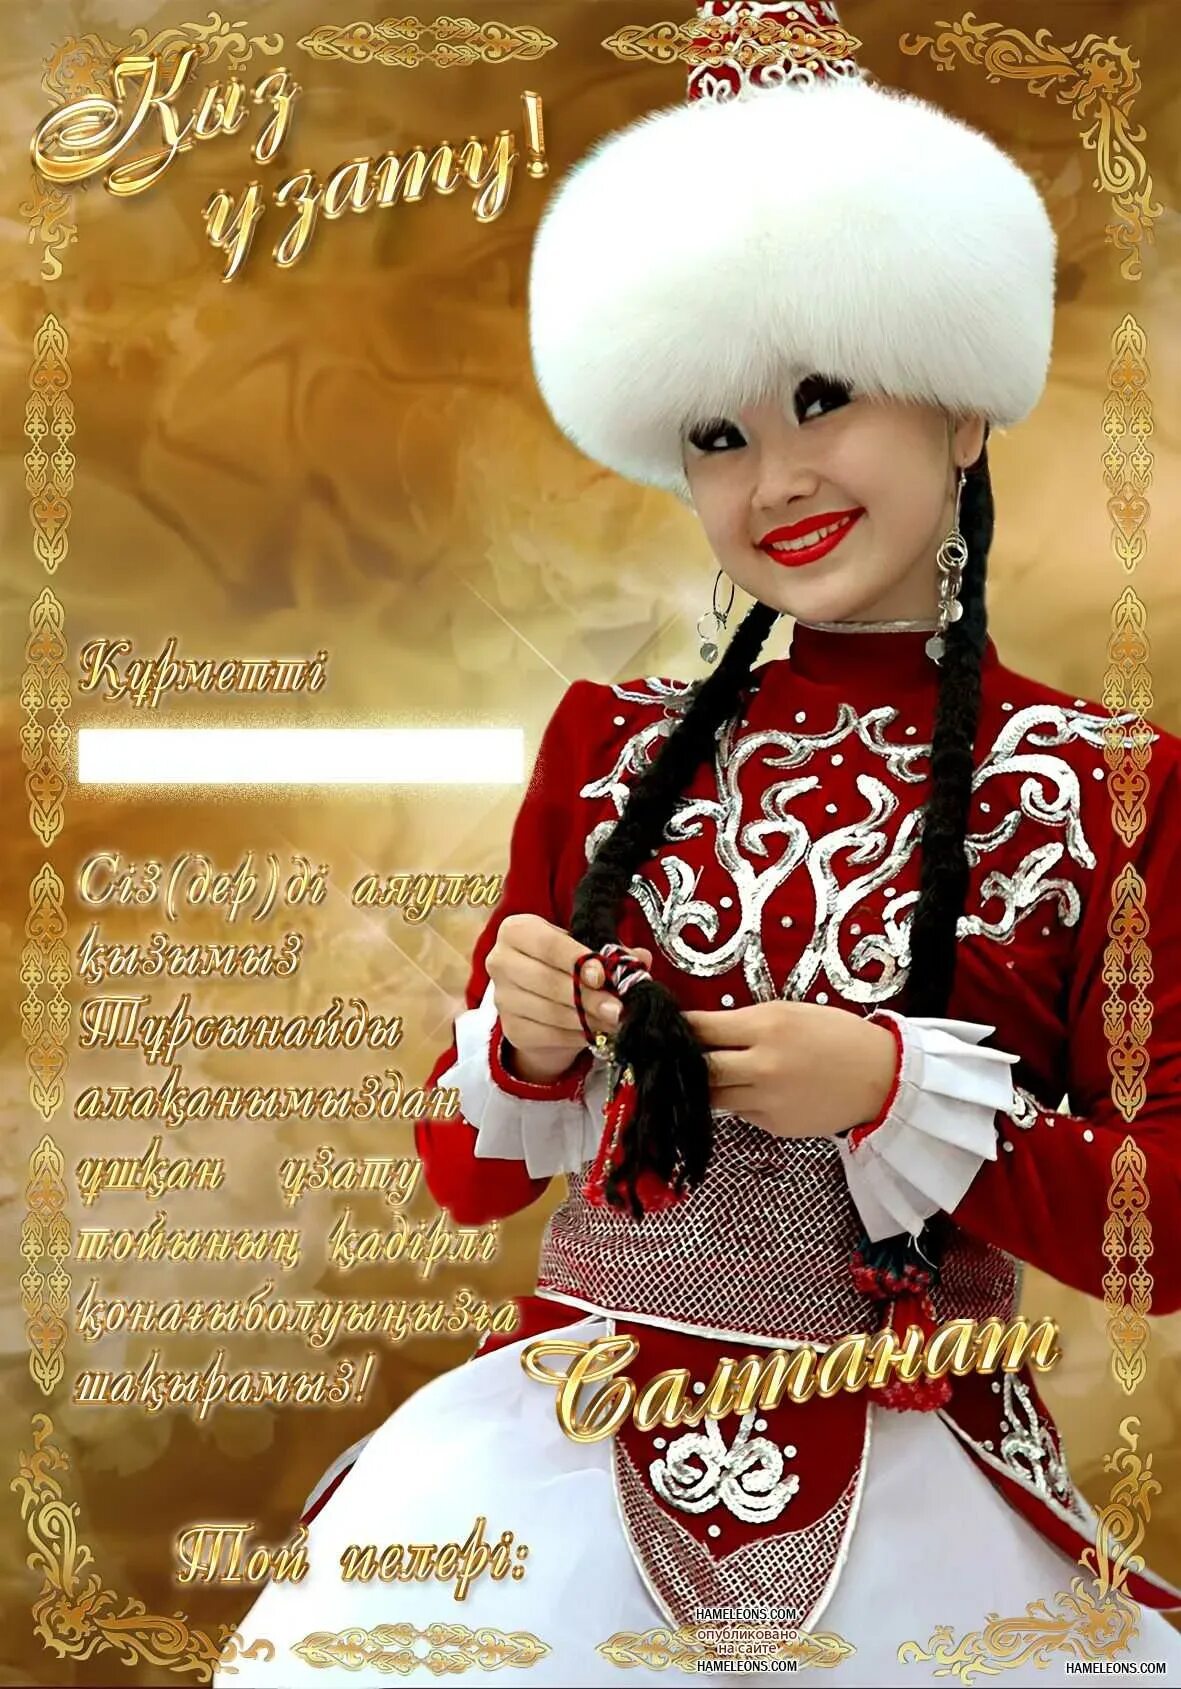 Казахскими поздравления красива. Поздравление казаха с днем рождения. Казахские открытки с днем рождения. Открытки с юбилеем на казахском языке. Казах поздравляет с днем рождения.